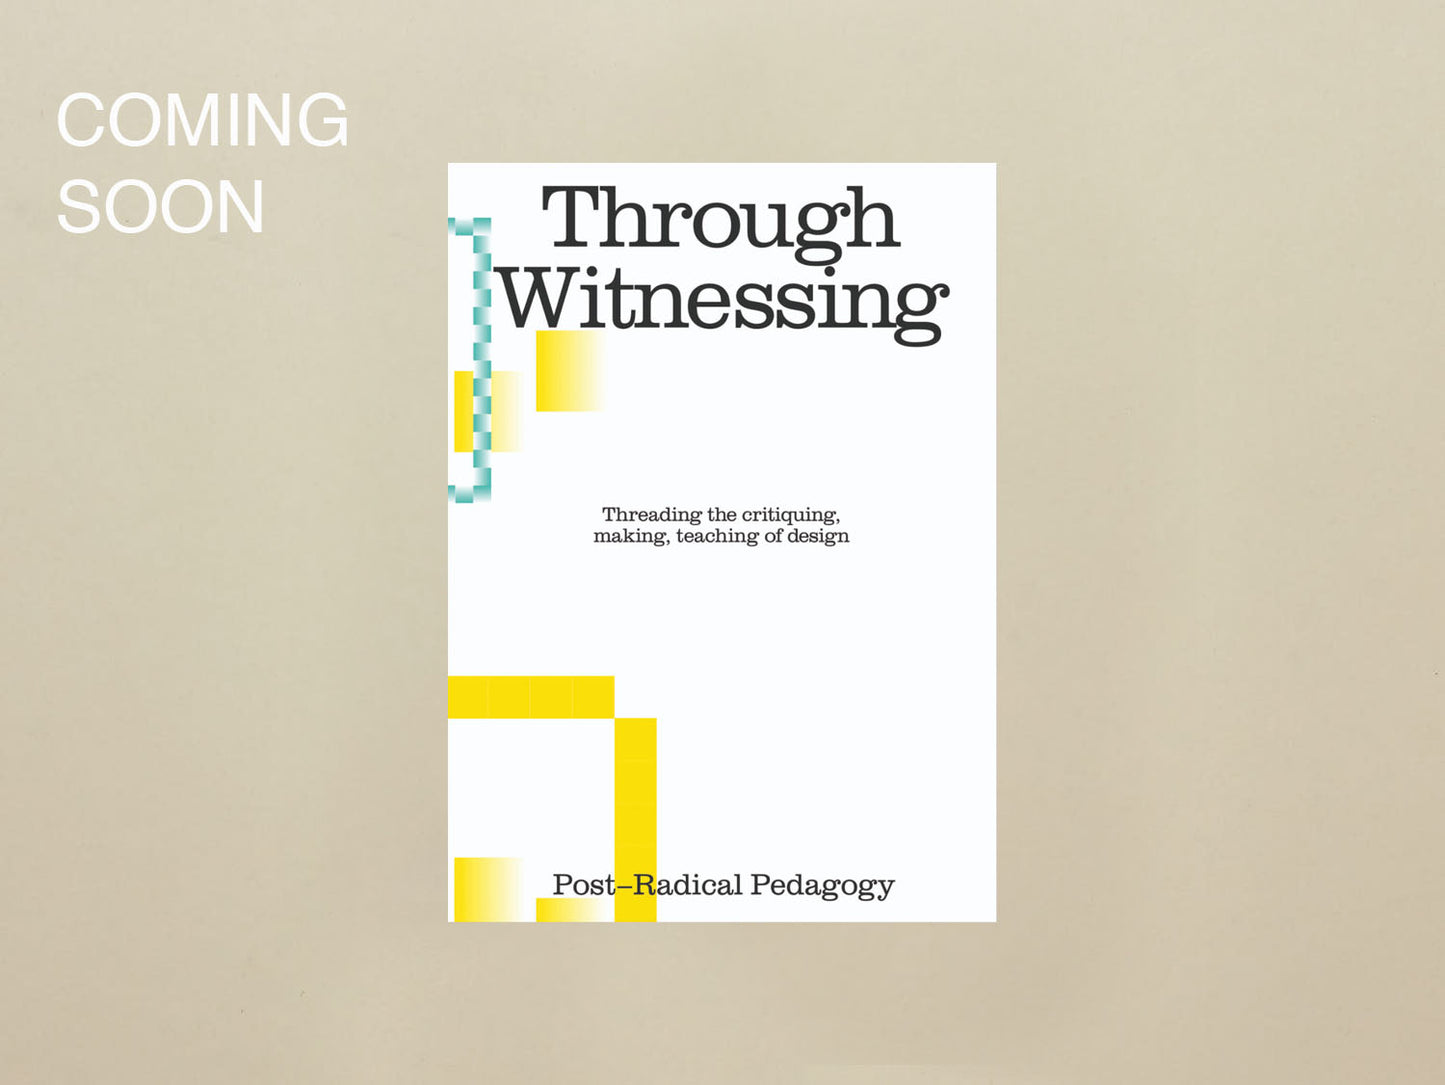 Nida Abdullah, Chris Lee, Xinyi Li (Eds.), Through Witnessing Threading the critiquing, making, teaching of design